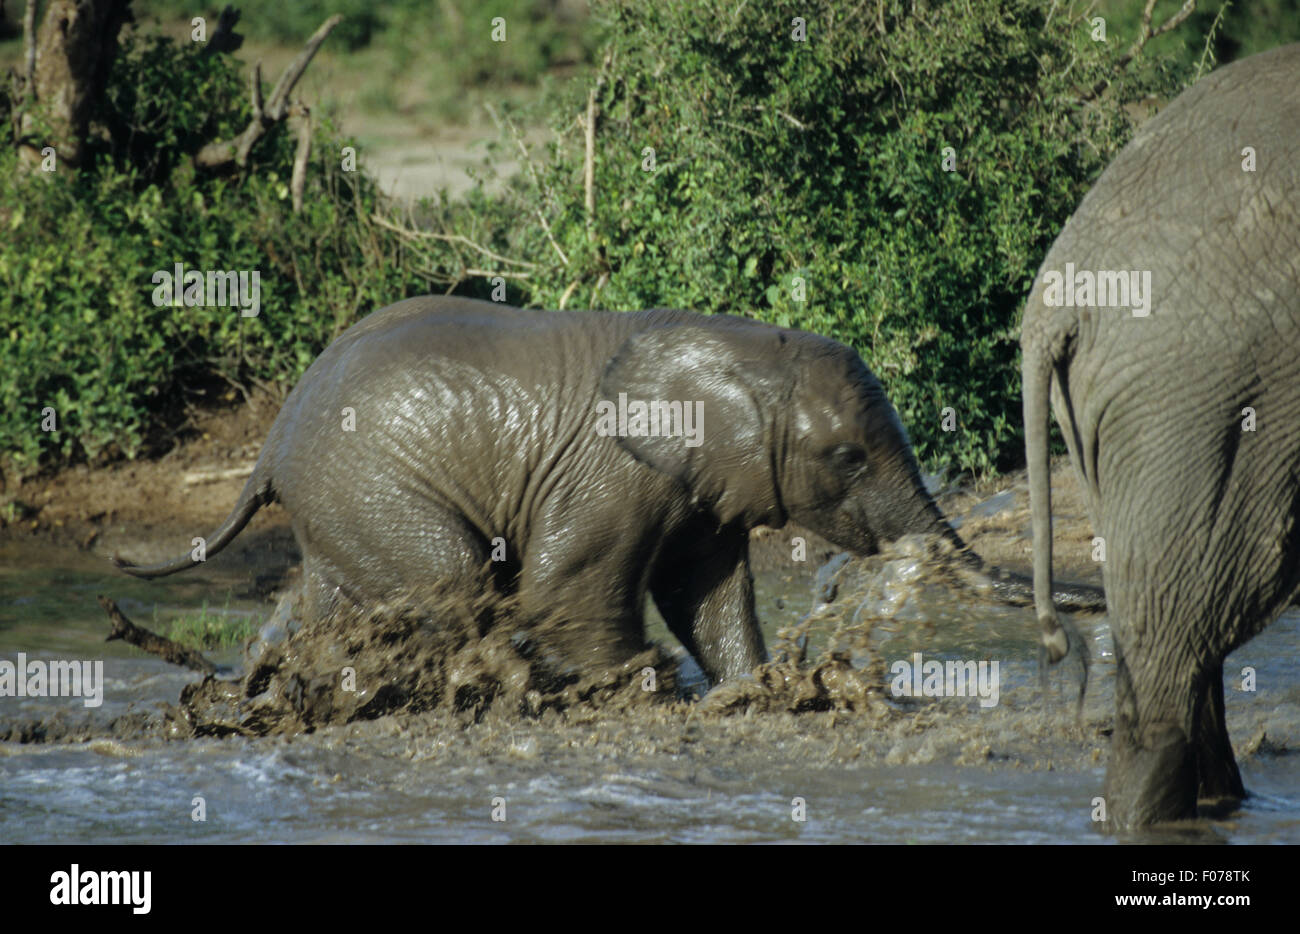 Elefante africano presi in profilo i giovani vitelli in esecuzione a destra attraverso bagnato con acqua di balneazione da spruzzi d'acqua Foto Stock